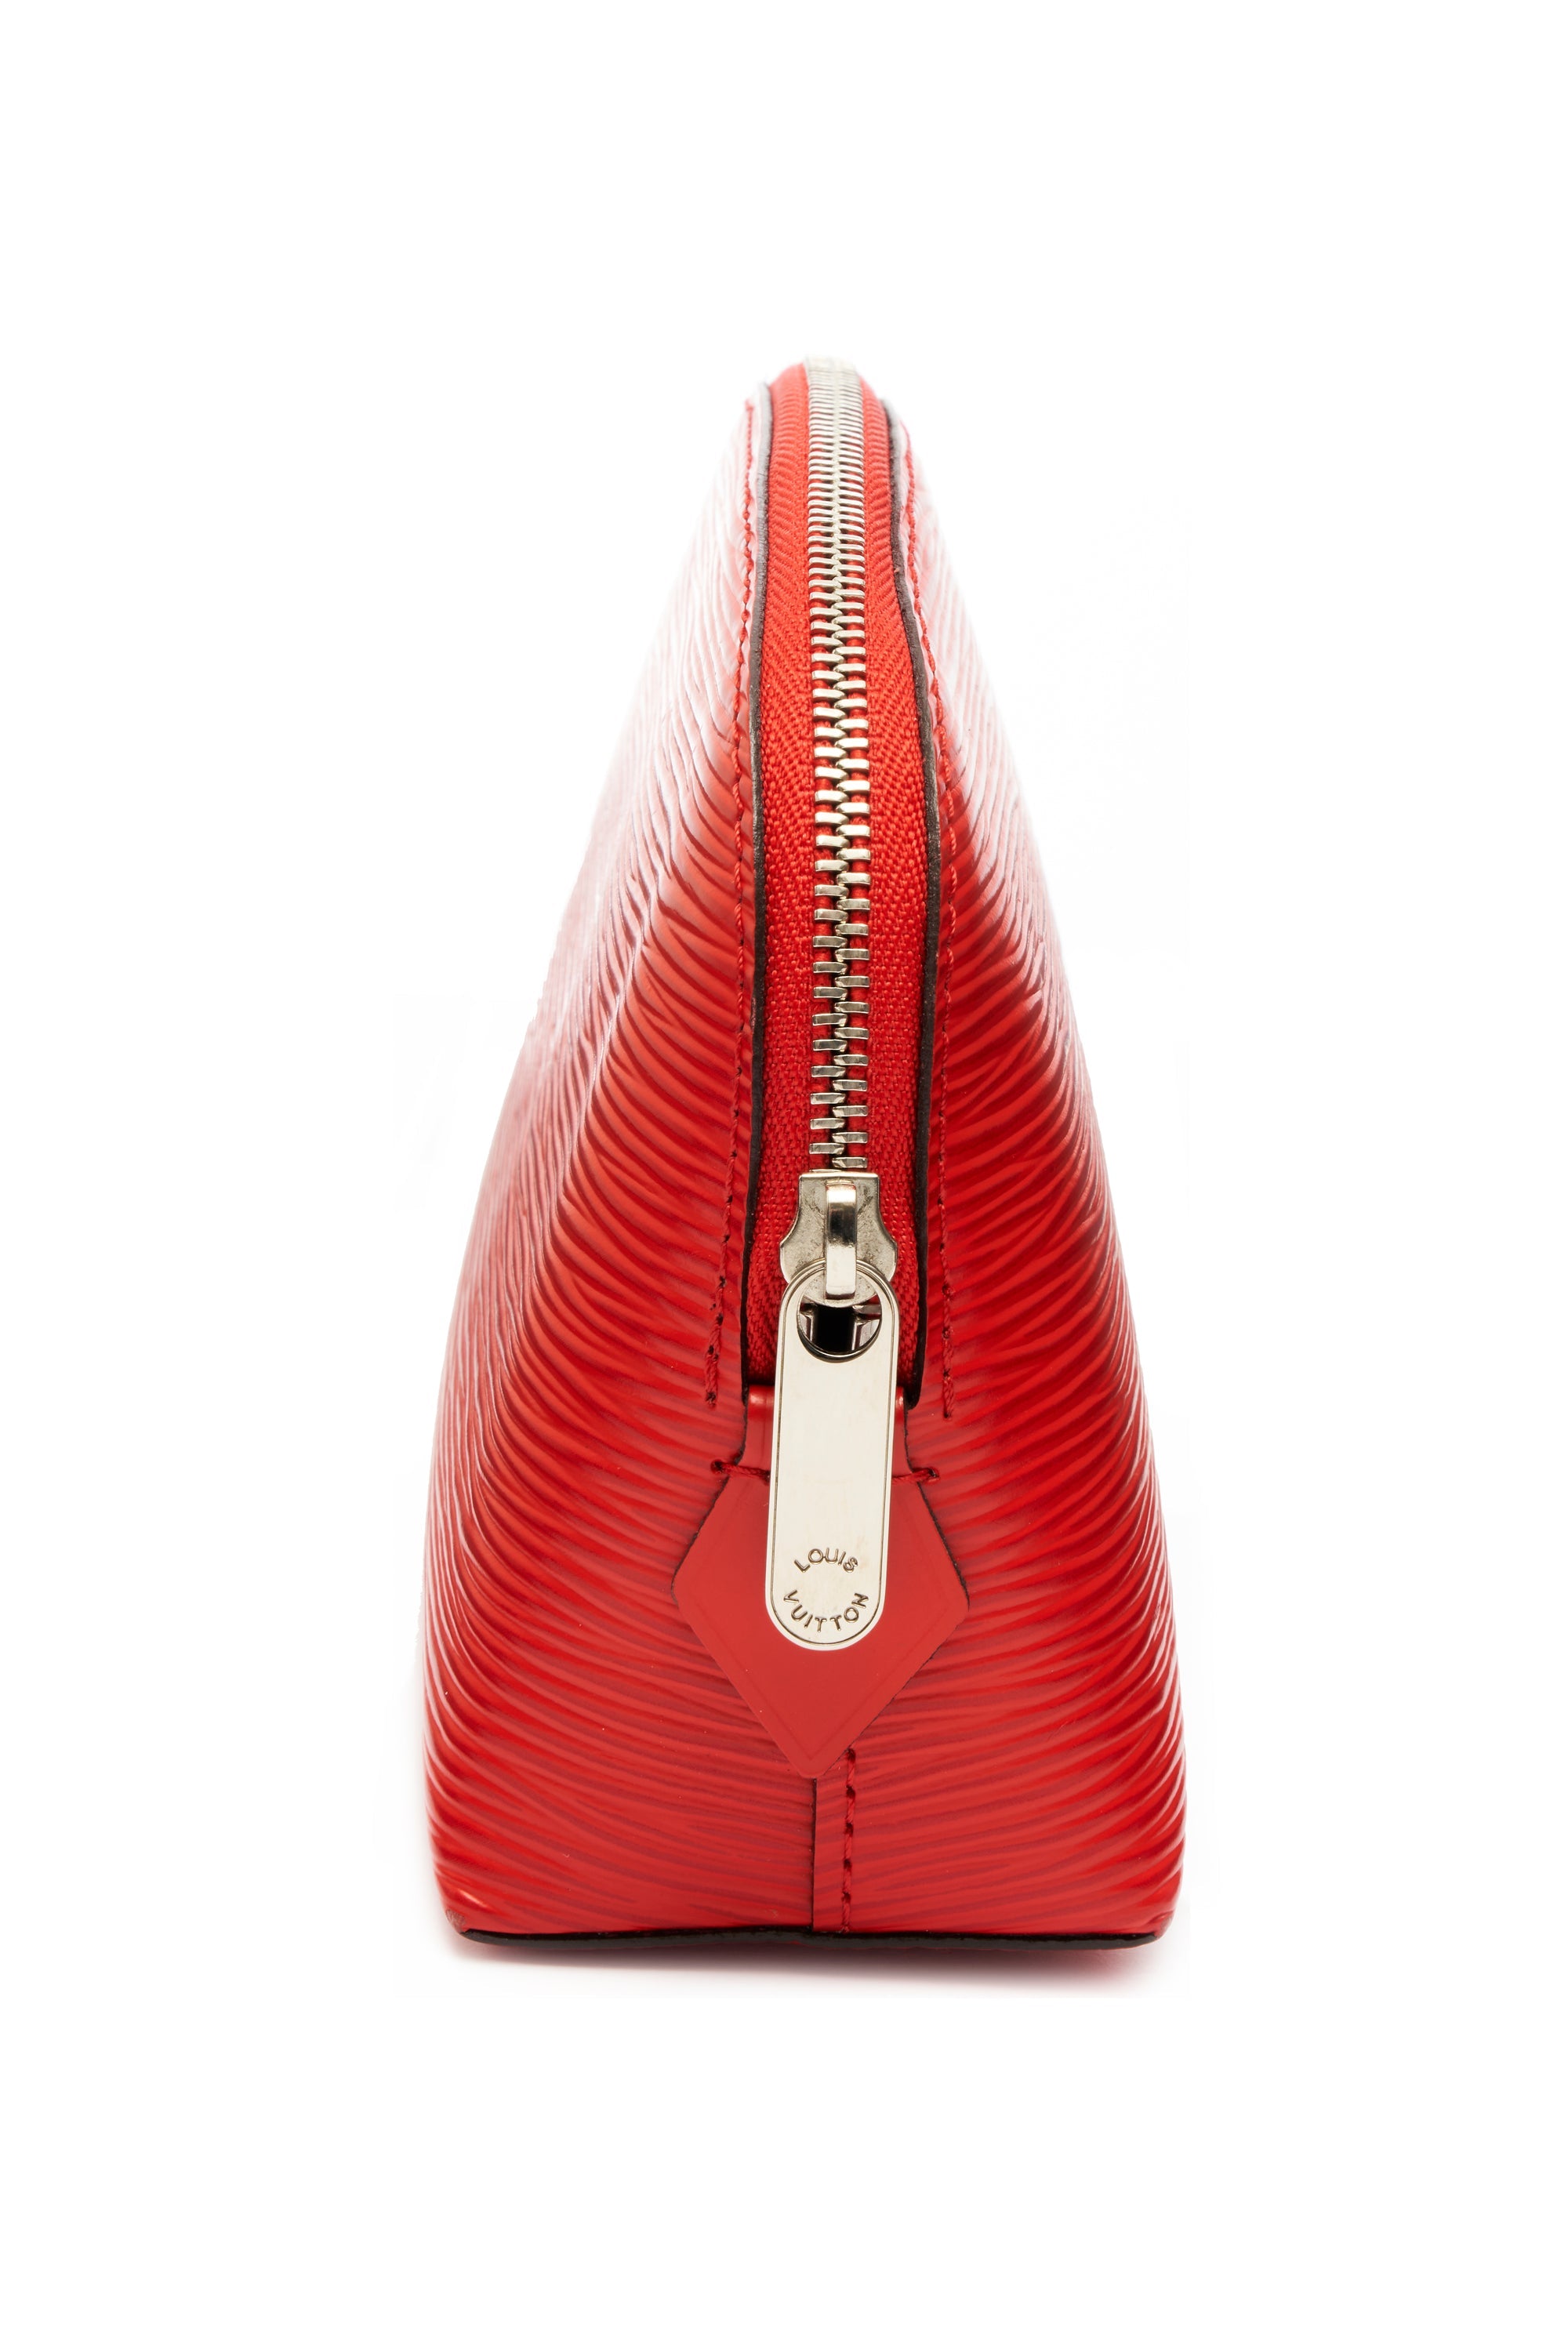 Louis Vuitton Coquelicot Red Epi Leather Cosmetics Pochette